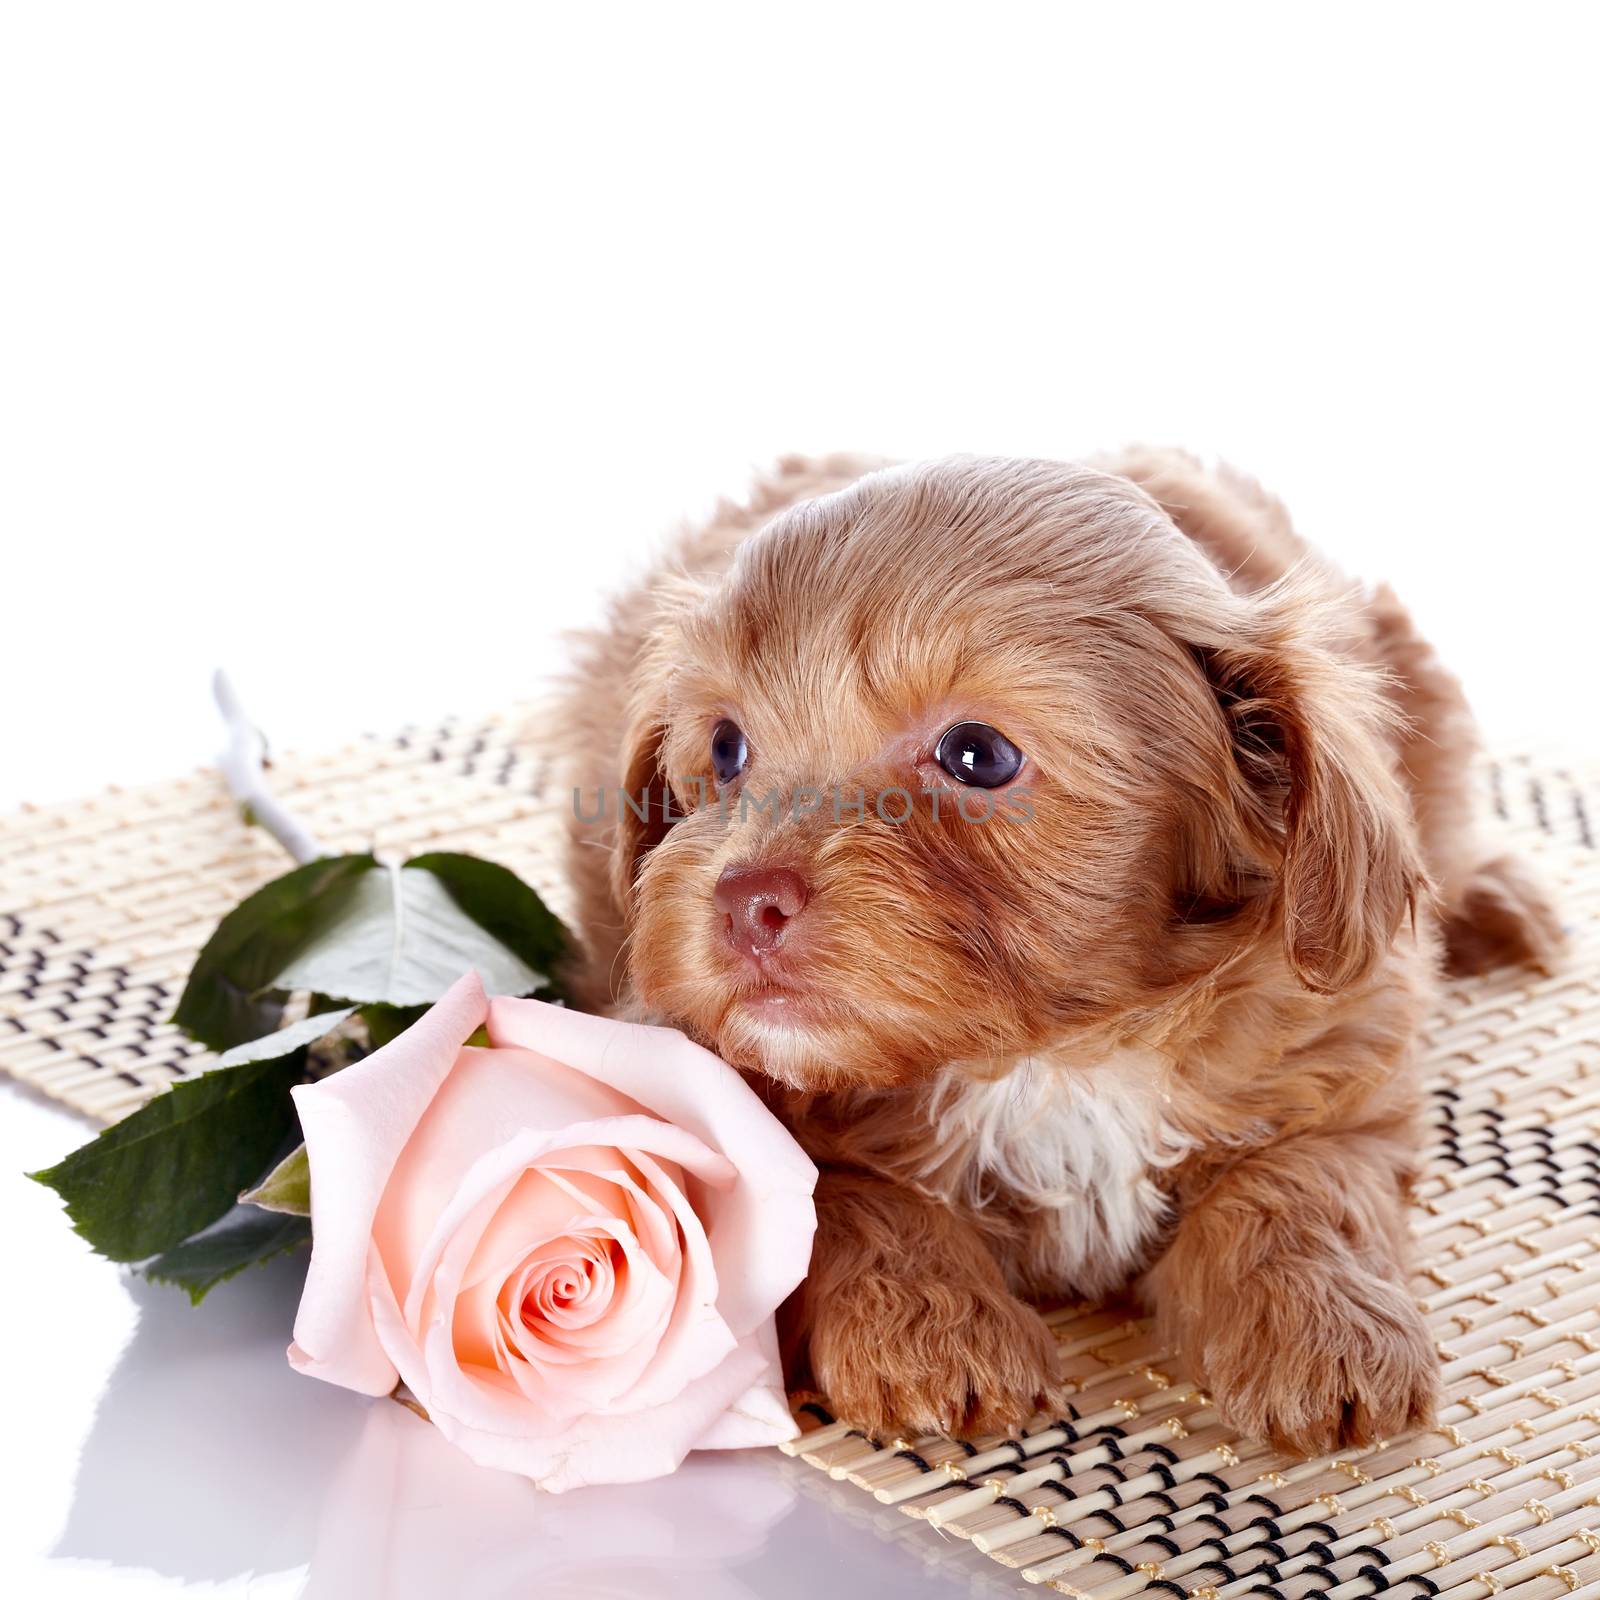 Puppy on a rug with a rose by Azaliya